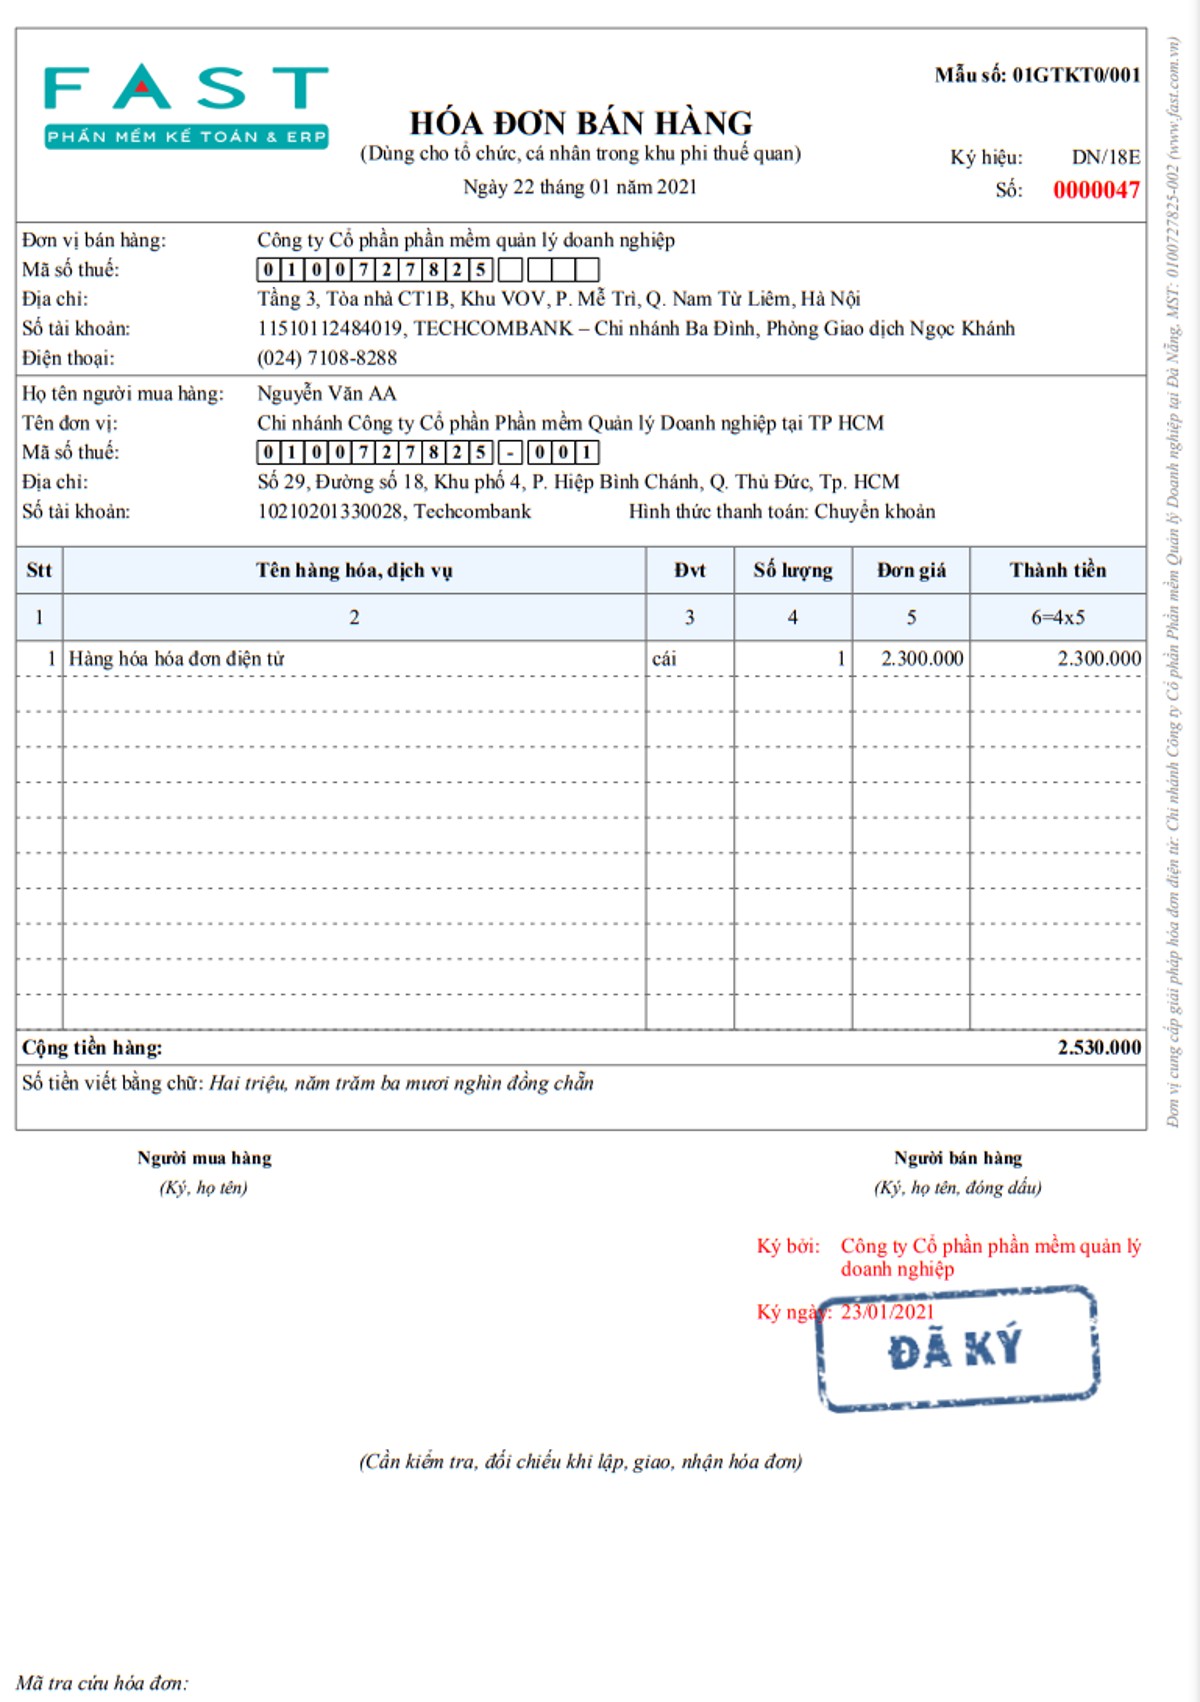 Hóa đơn bán hàng trong khu phi thuế quan theo Thông tư 39/2014/TT-BTC